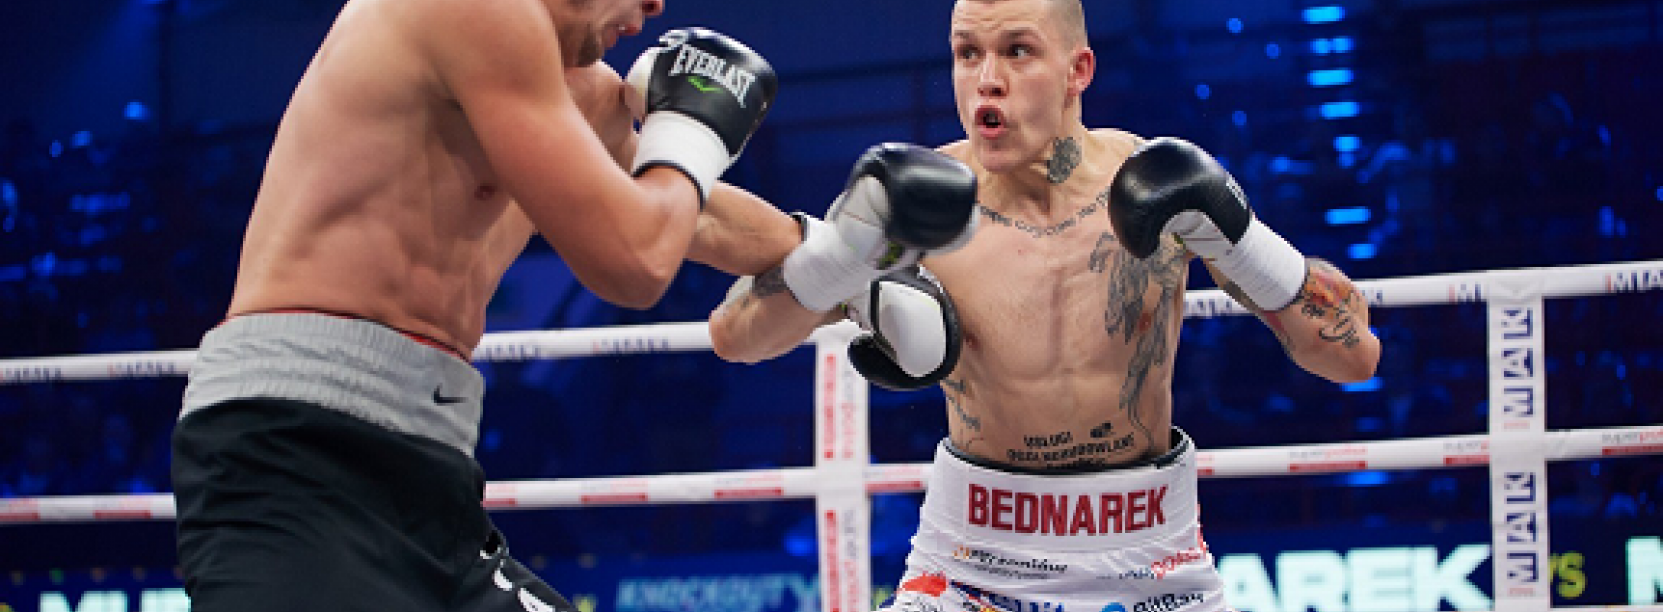 Zdjecie walki bokserskiej na którym Kamil Bednarek atakuje swojego przeciwnika